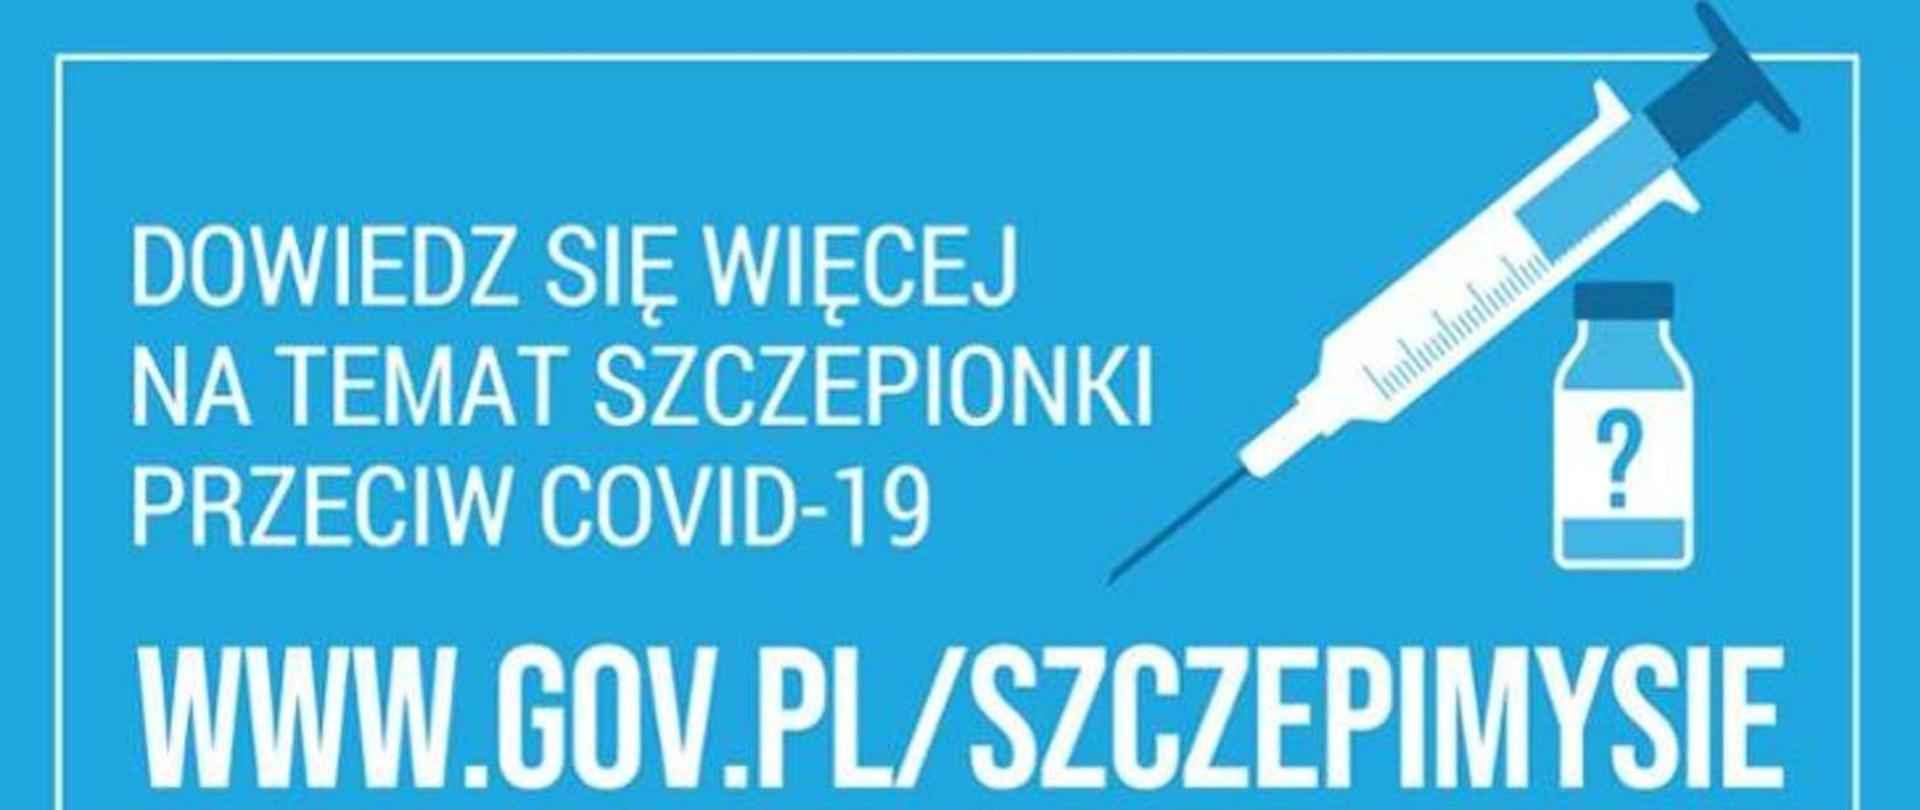 Napis " Dowiedz sie więcej na temat szczepionki przeciw covid-19 www.gov.pl/szczepimysie"